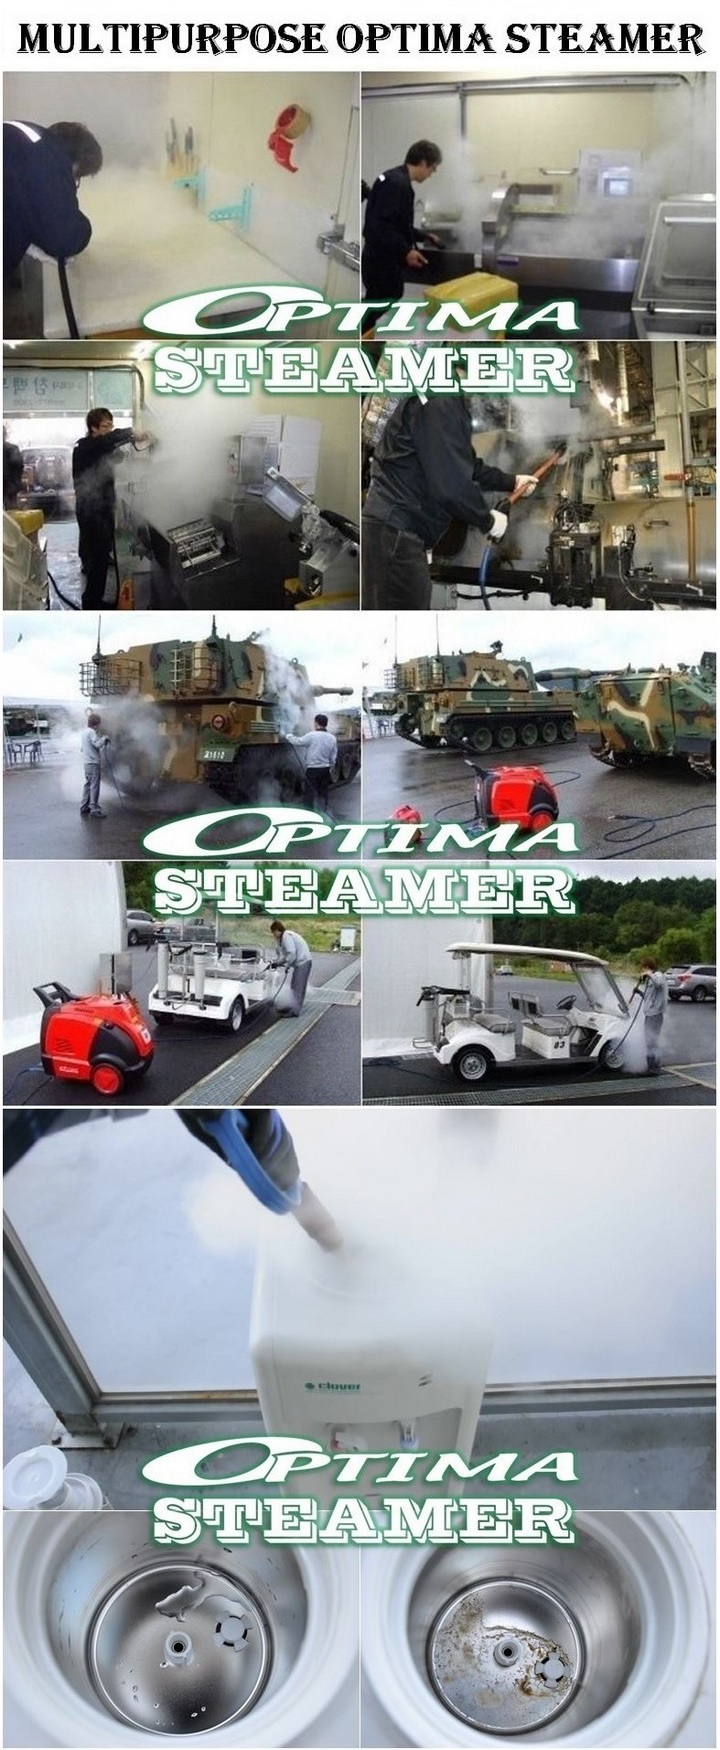 05 steam washer optima steamer